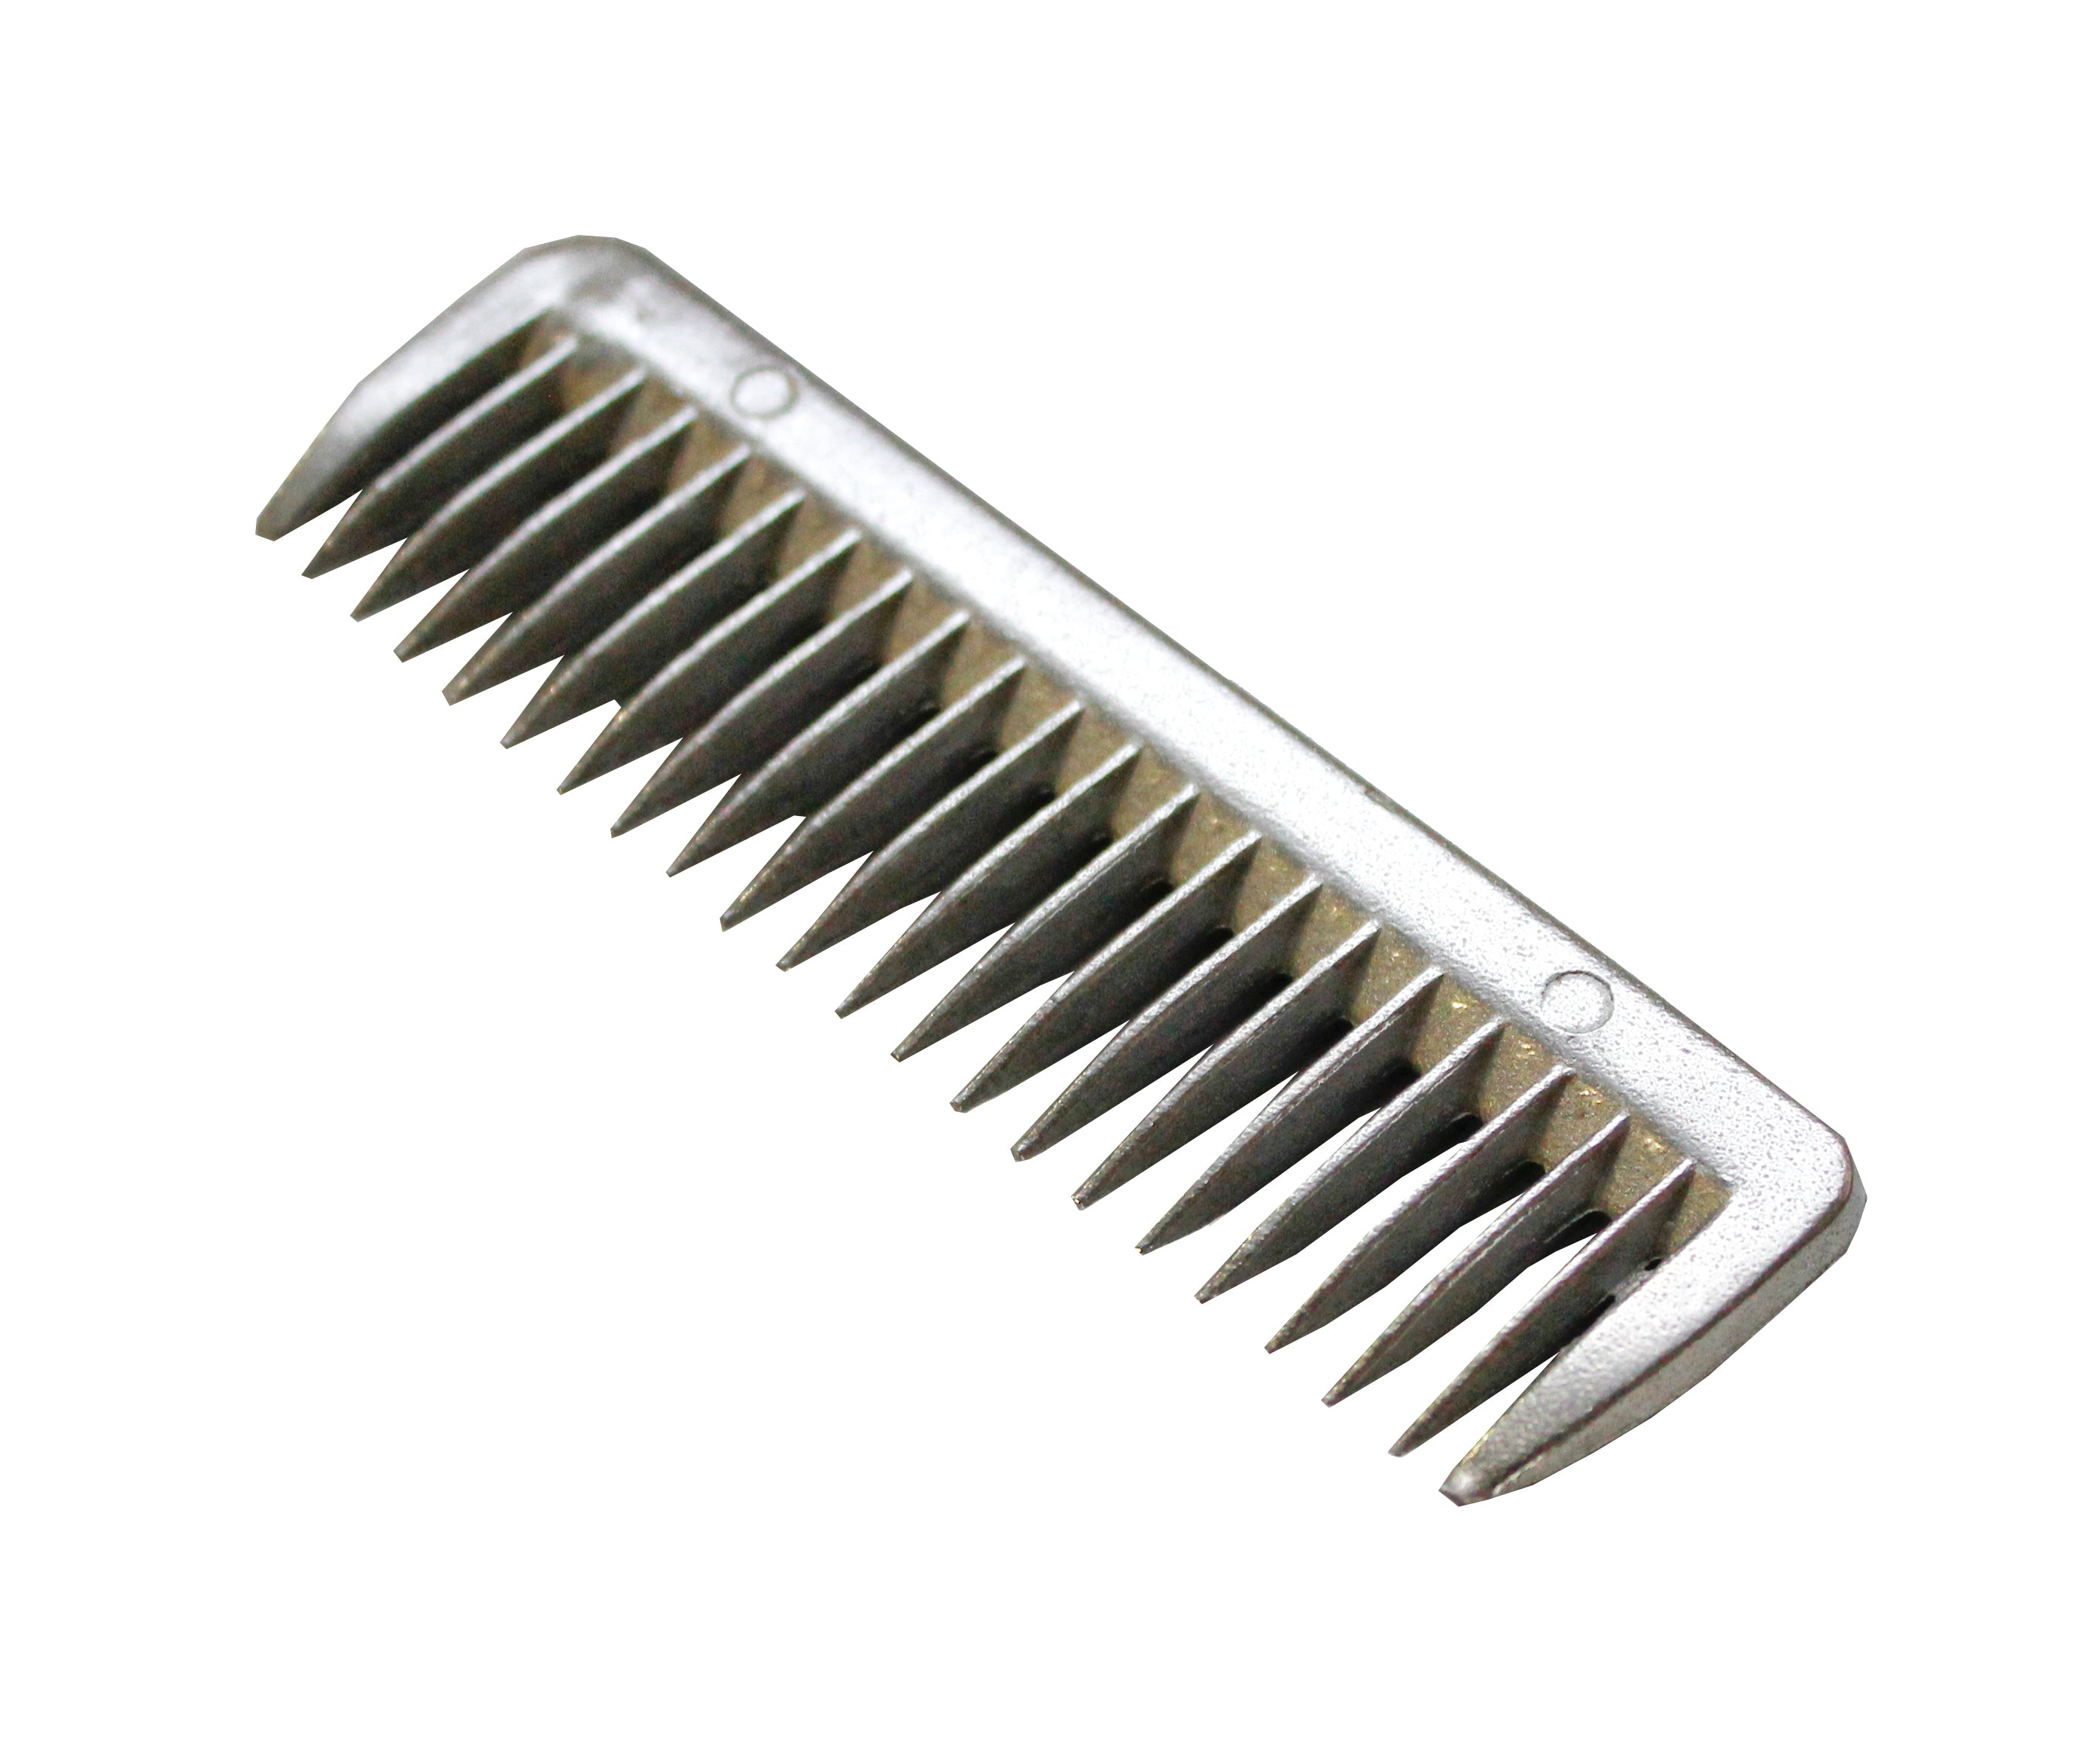 Comb Pulling Allumium